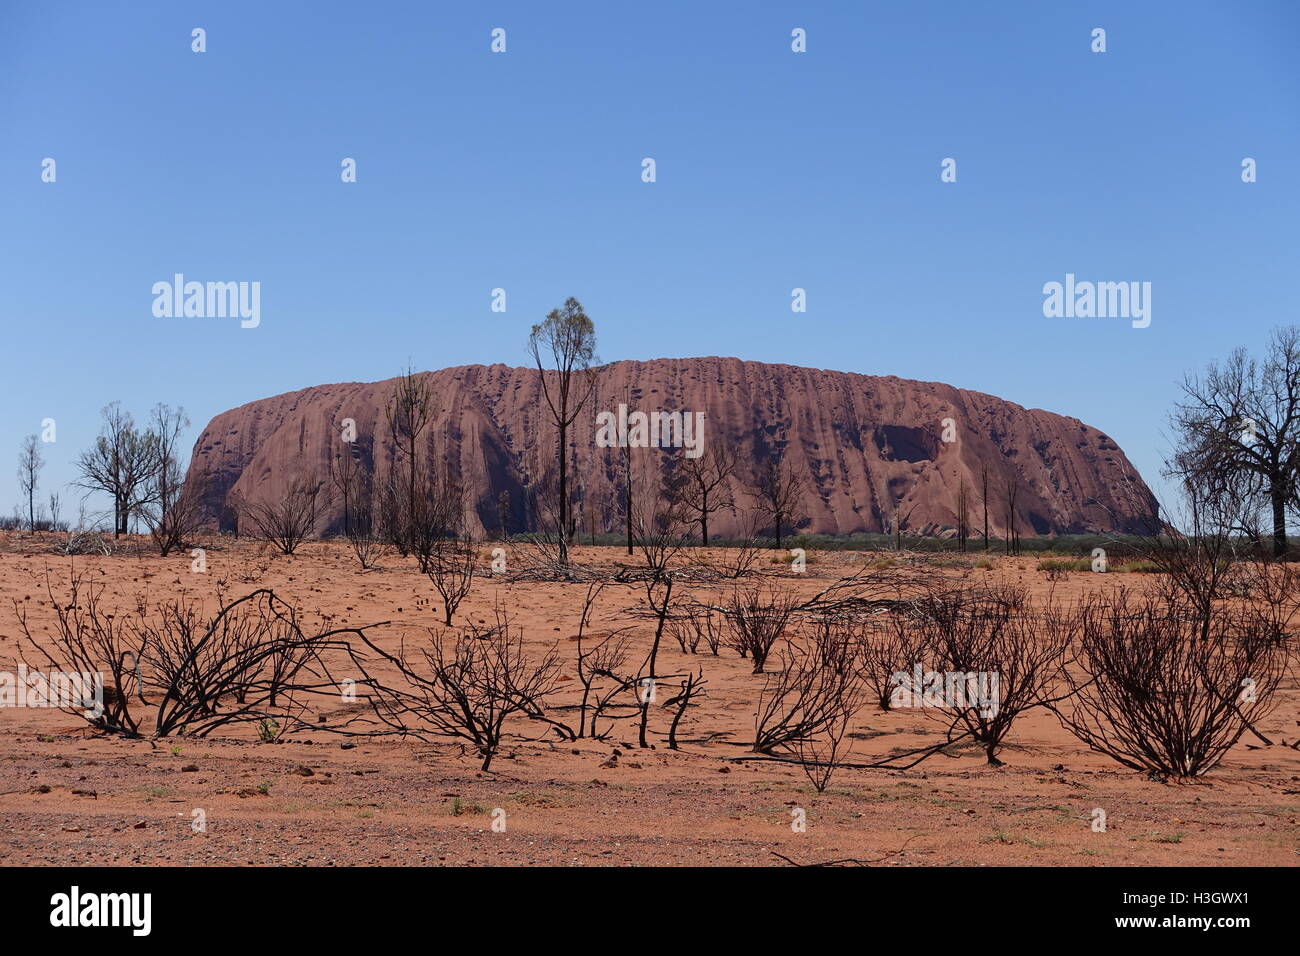 Uluru (Ayers Rock) in the Northern Territory, Australia Stock Photo